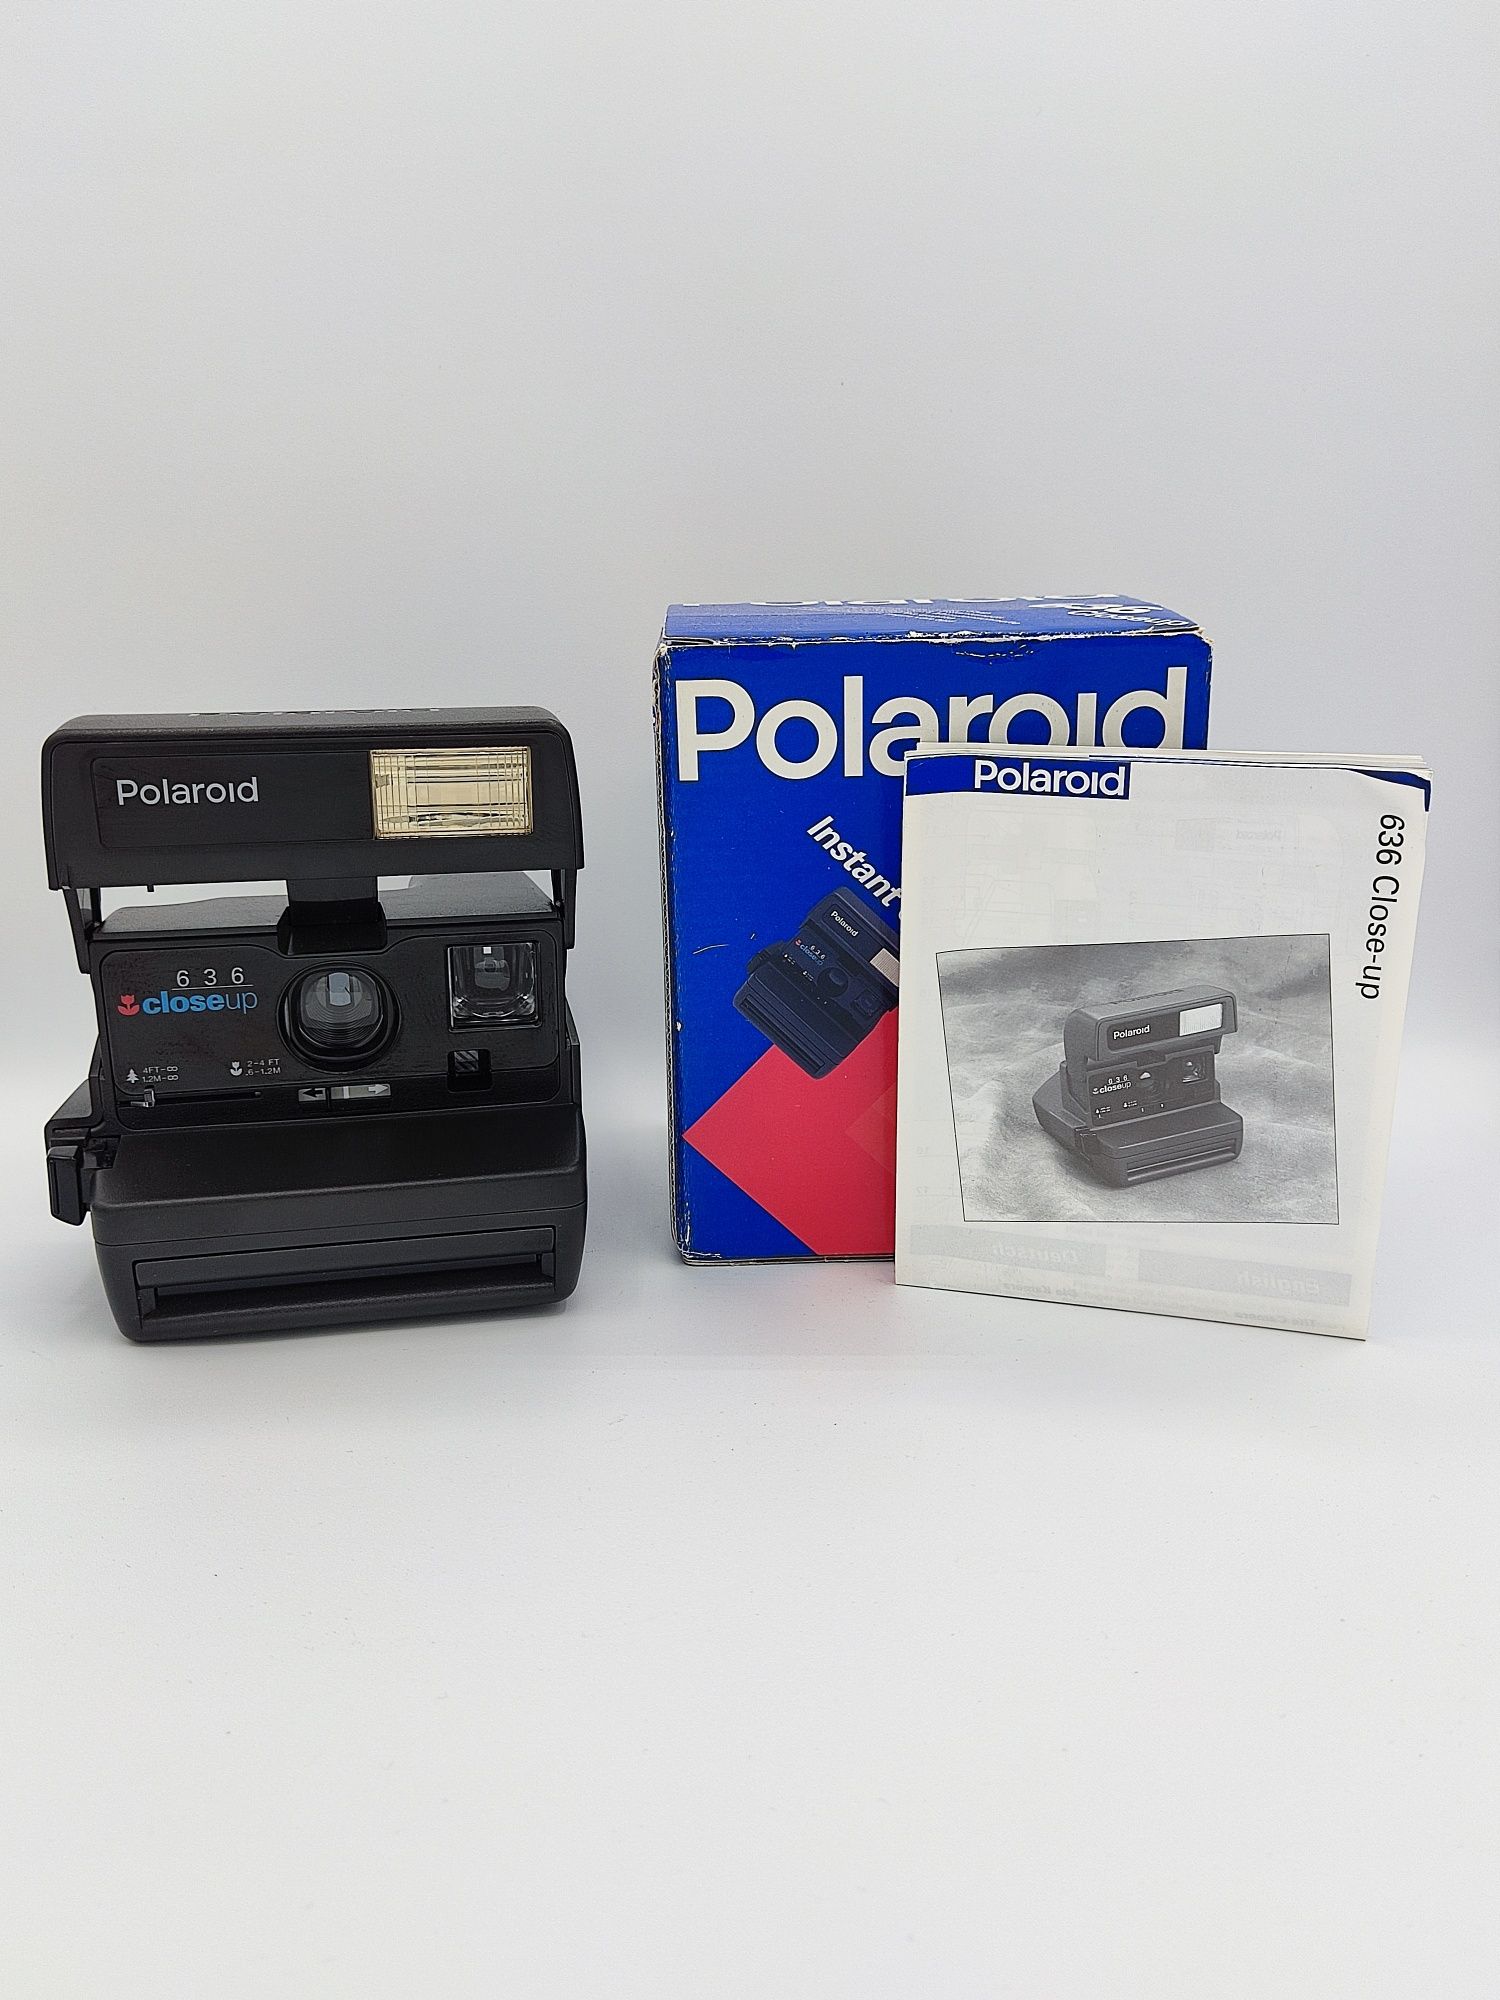 Polaroid 636 Close Up c/ caixa